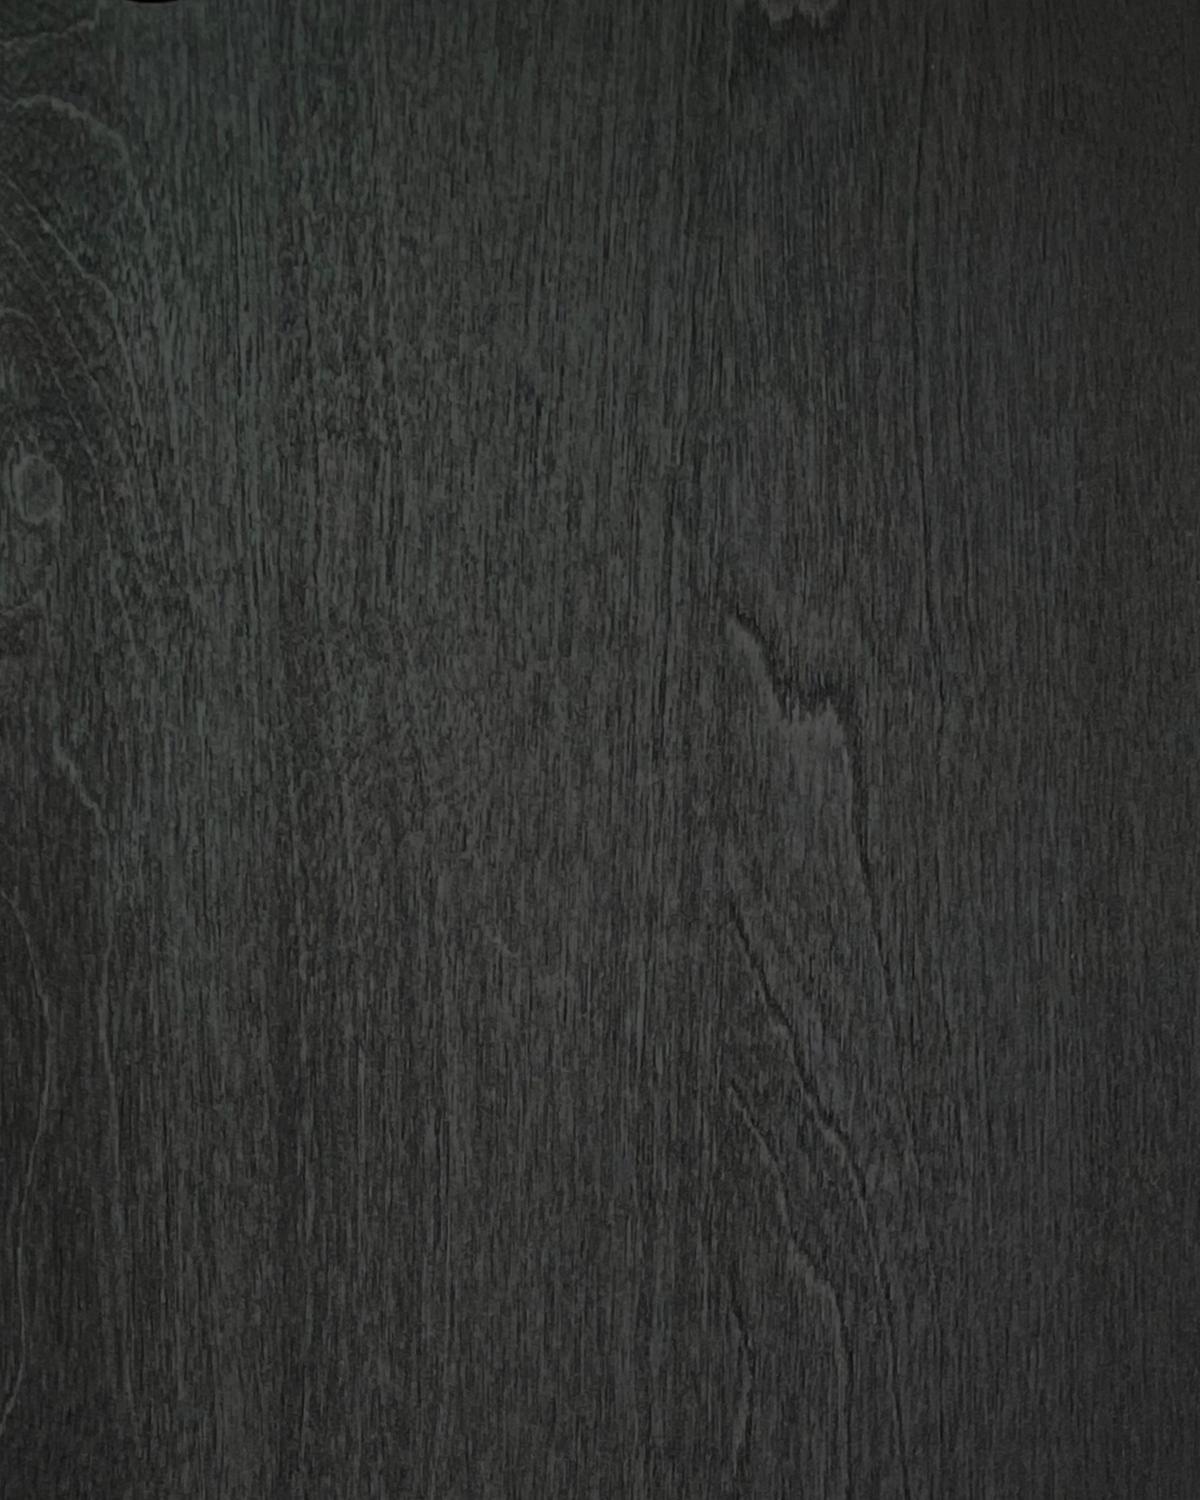 Gewebe 196-Schwarzöl 
Schwarz Sideboard, aus massivem Birkenholz und laminiert birchveneér. Modern und doch klassisch, kühn und doch bescheiden ist der Schrank ein großartiges Beispiel für zeitgenössisches skandinavisches Design. Entworfen von Lukas